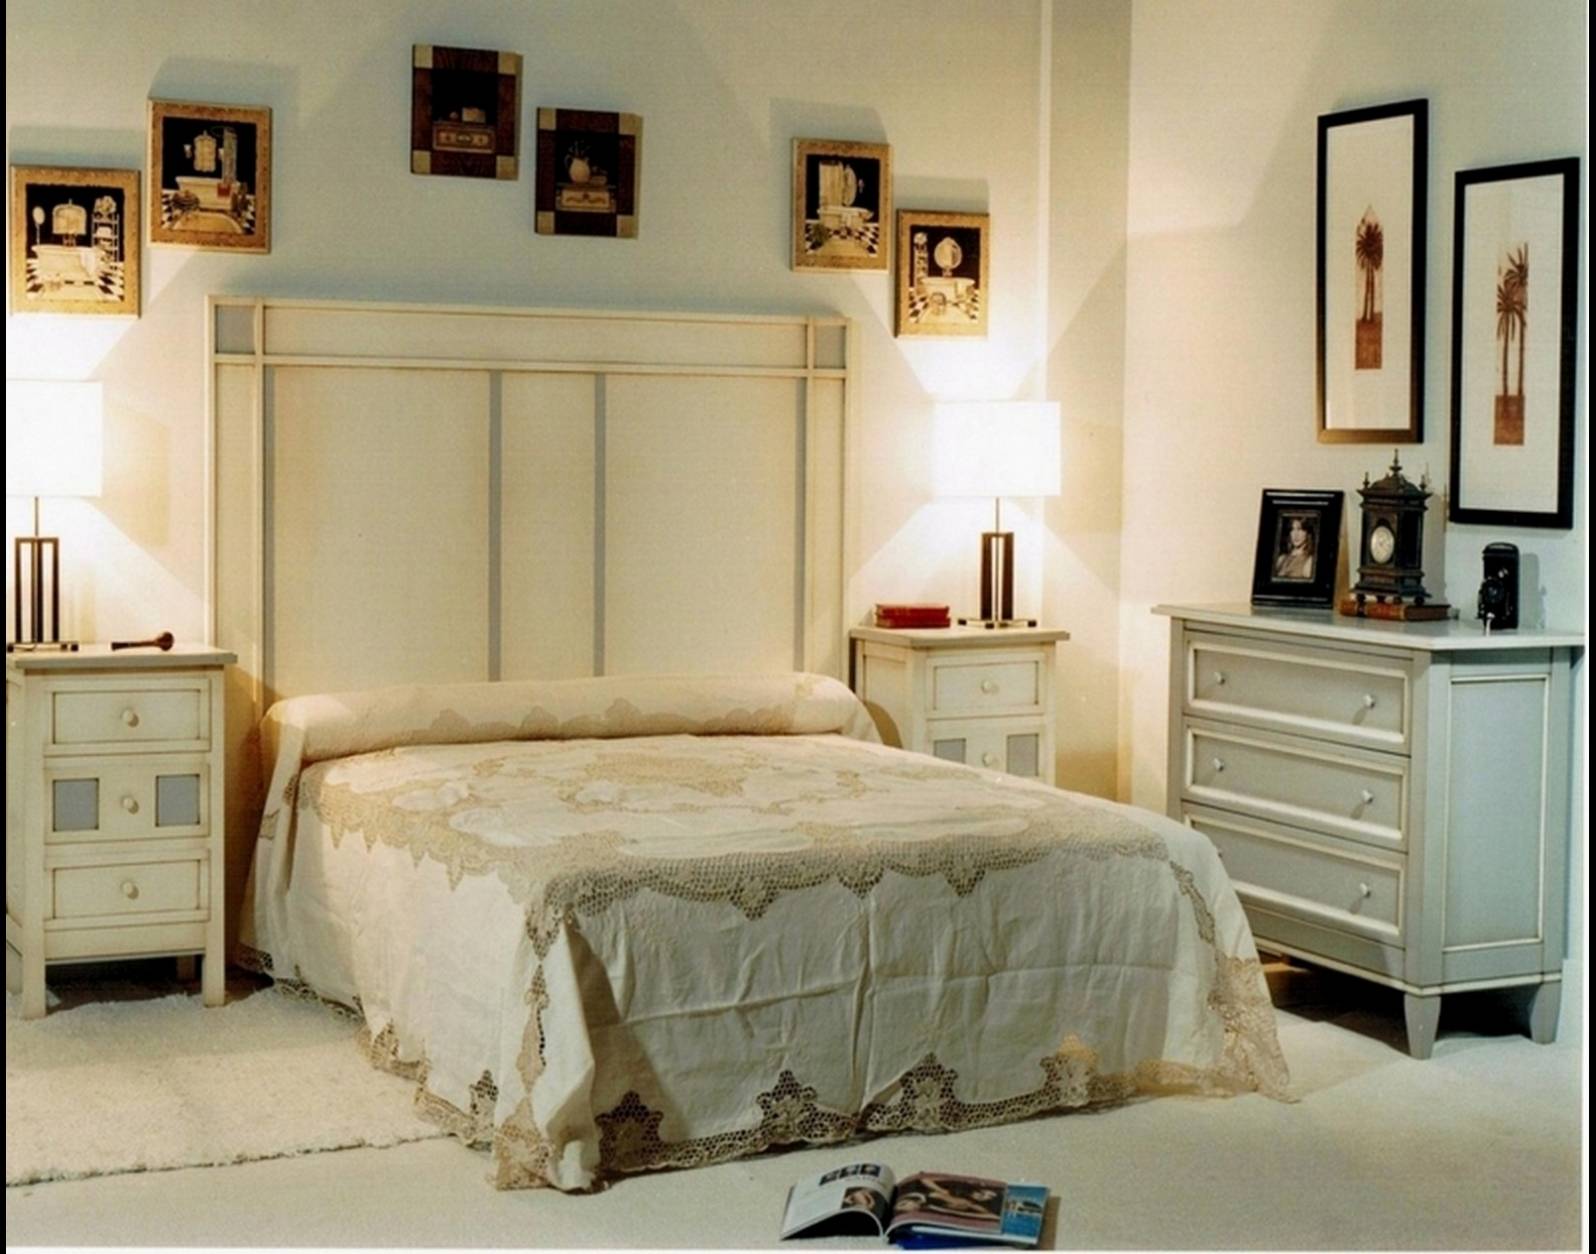 Cabecero de dormitorio Blanco y Gris, estilo Francés de madera